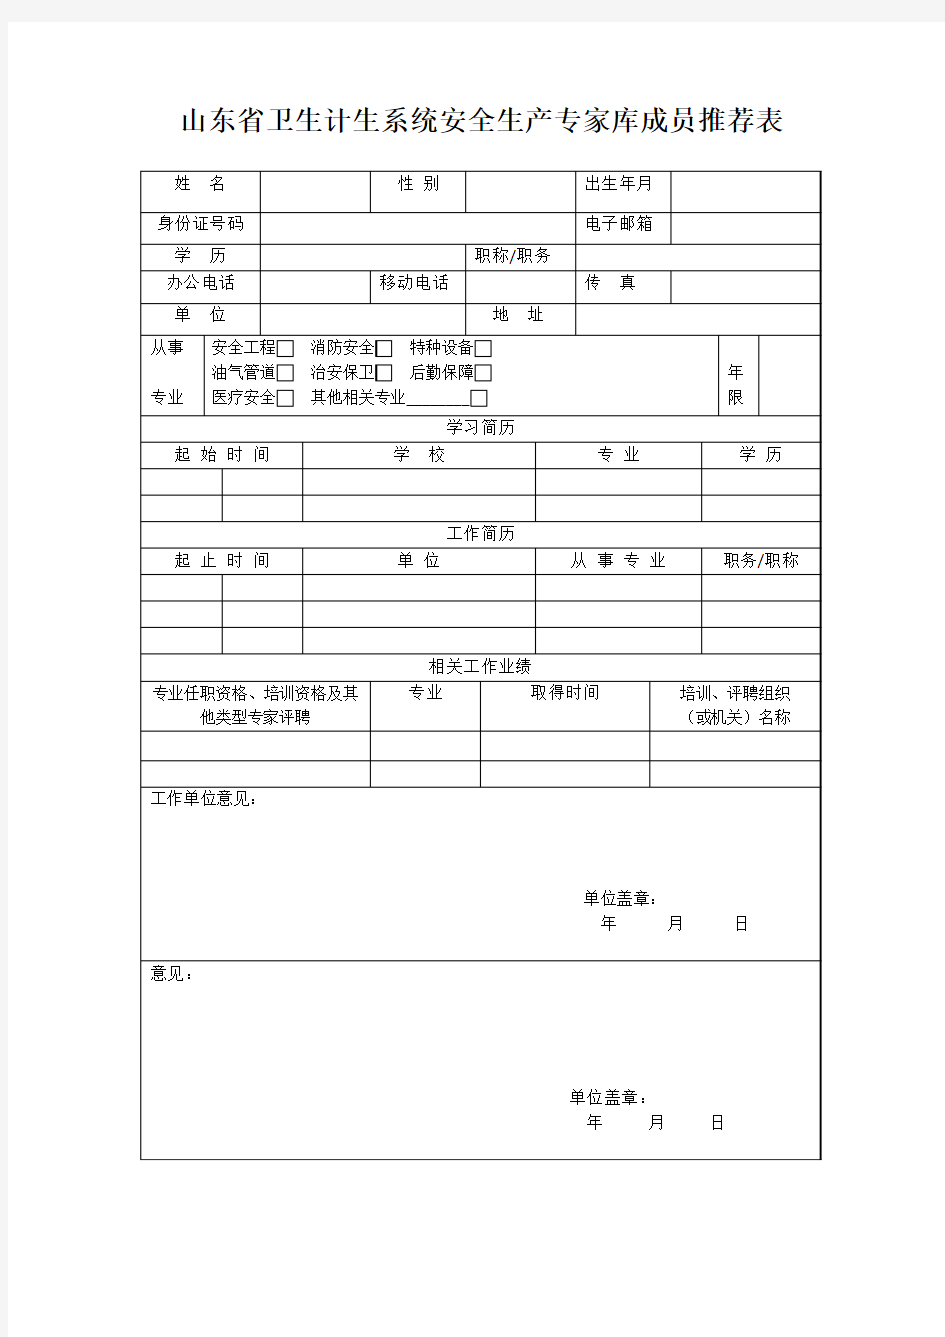 山东省卫生计生系统安全生产专家库成员推荐表